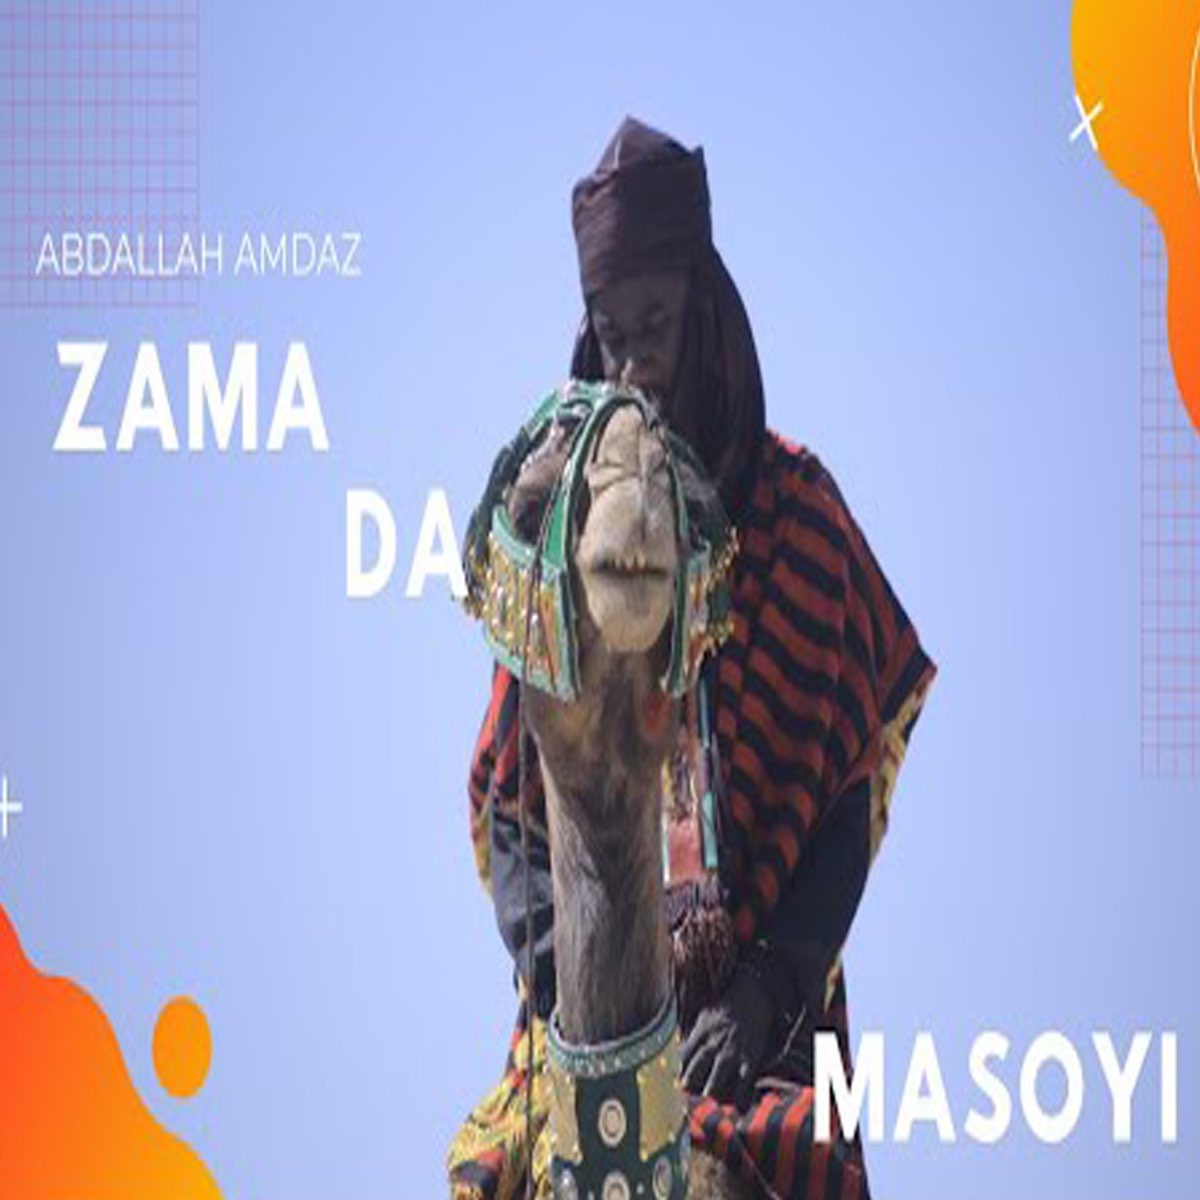 Zama Da Masoyi - Single by Abdallah Amdaz on Apple Music